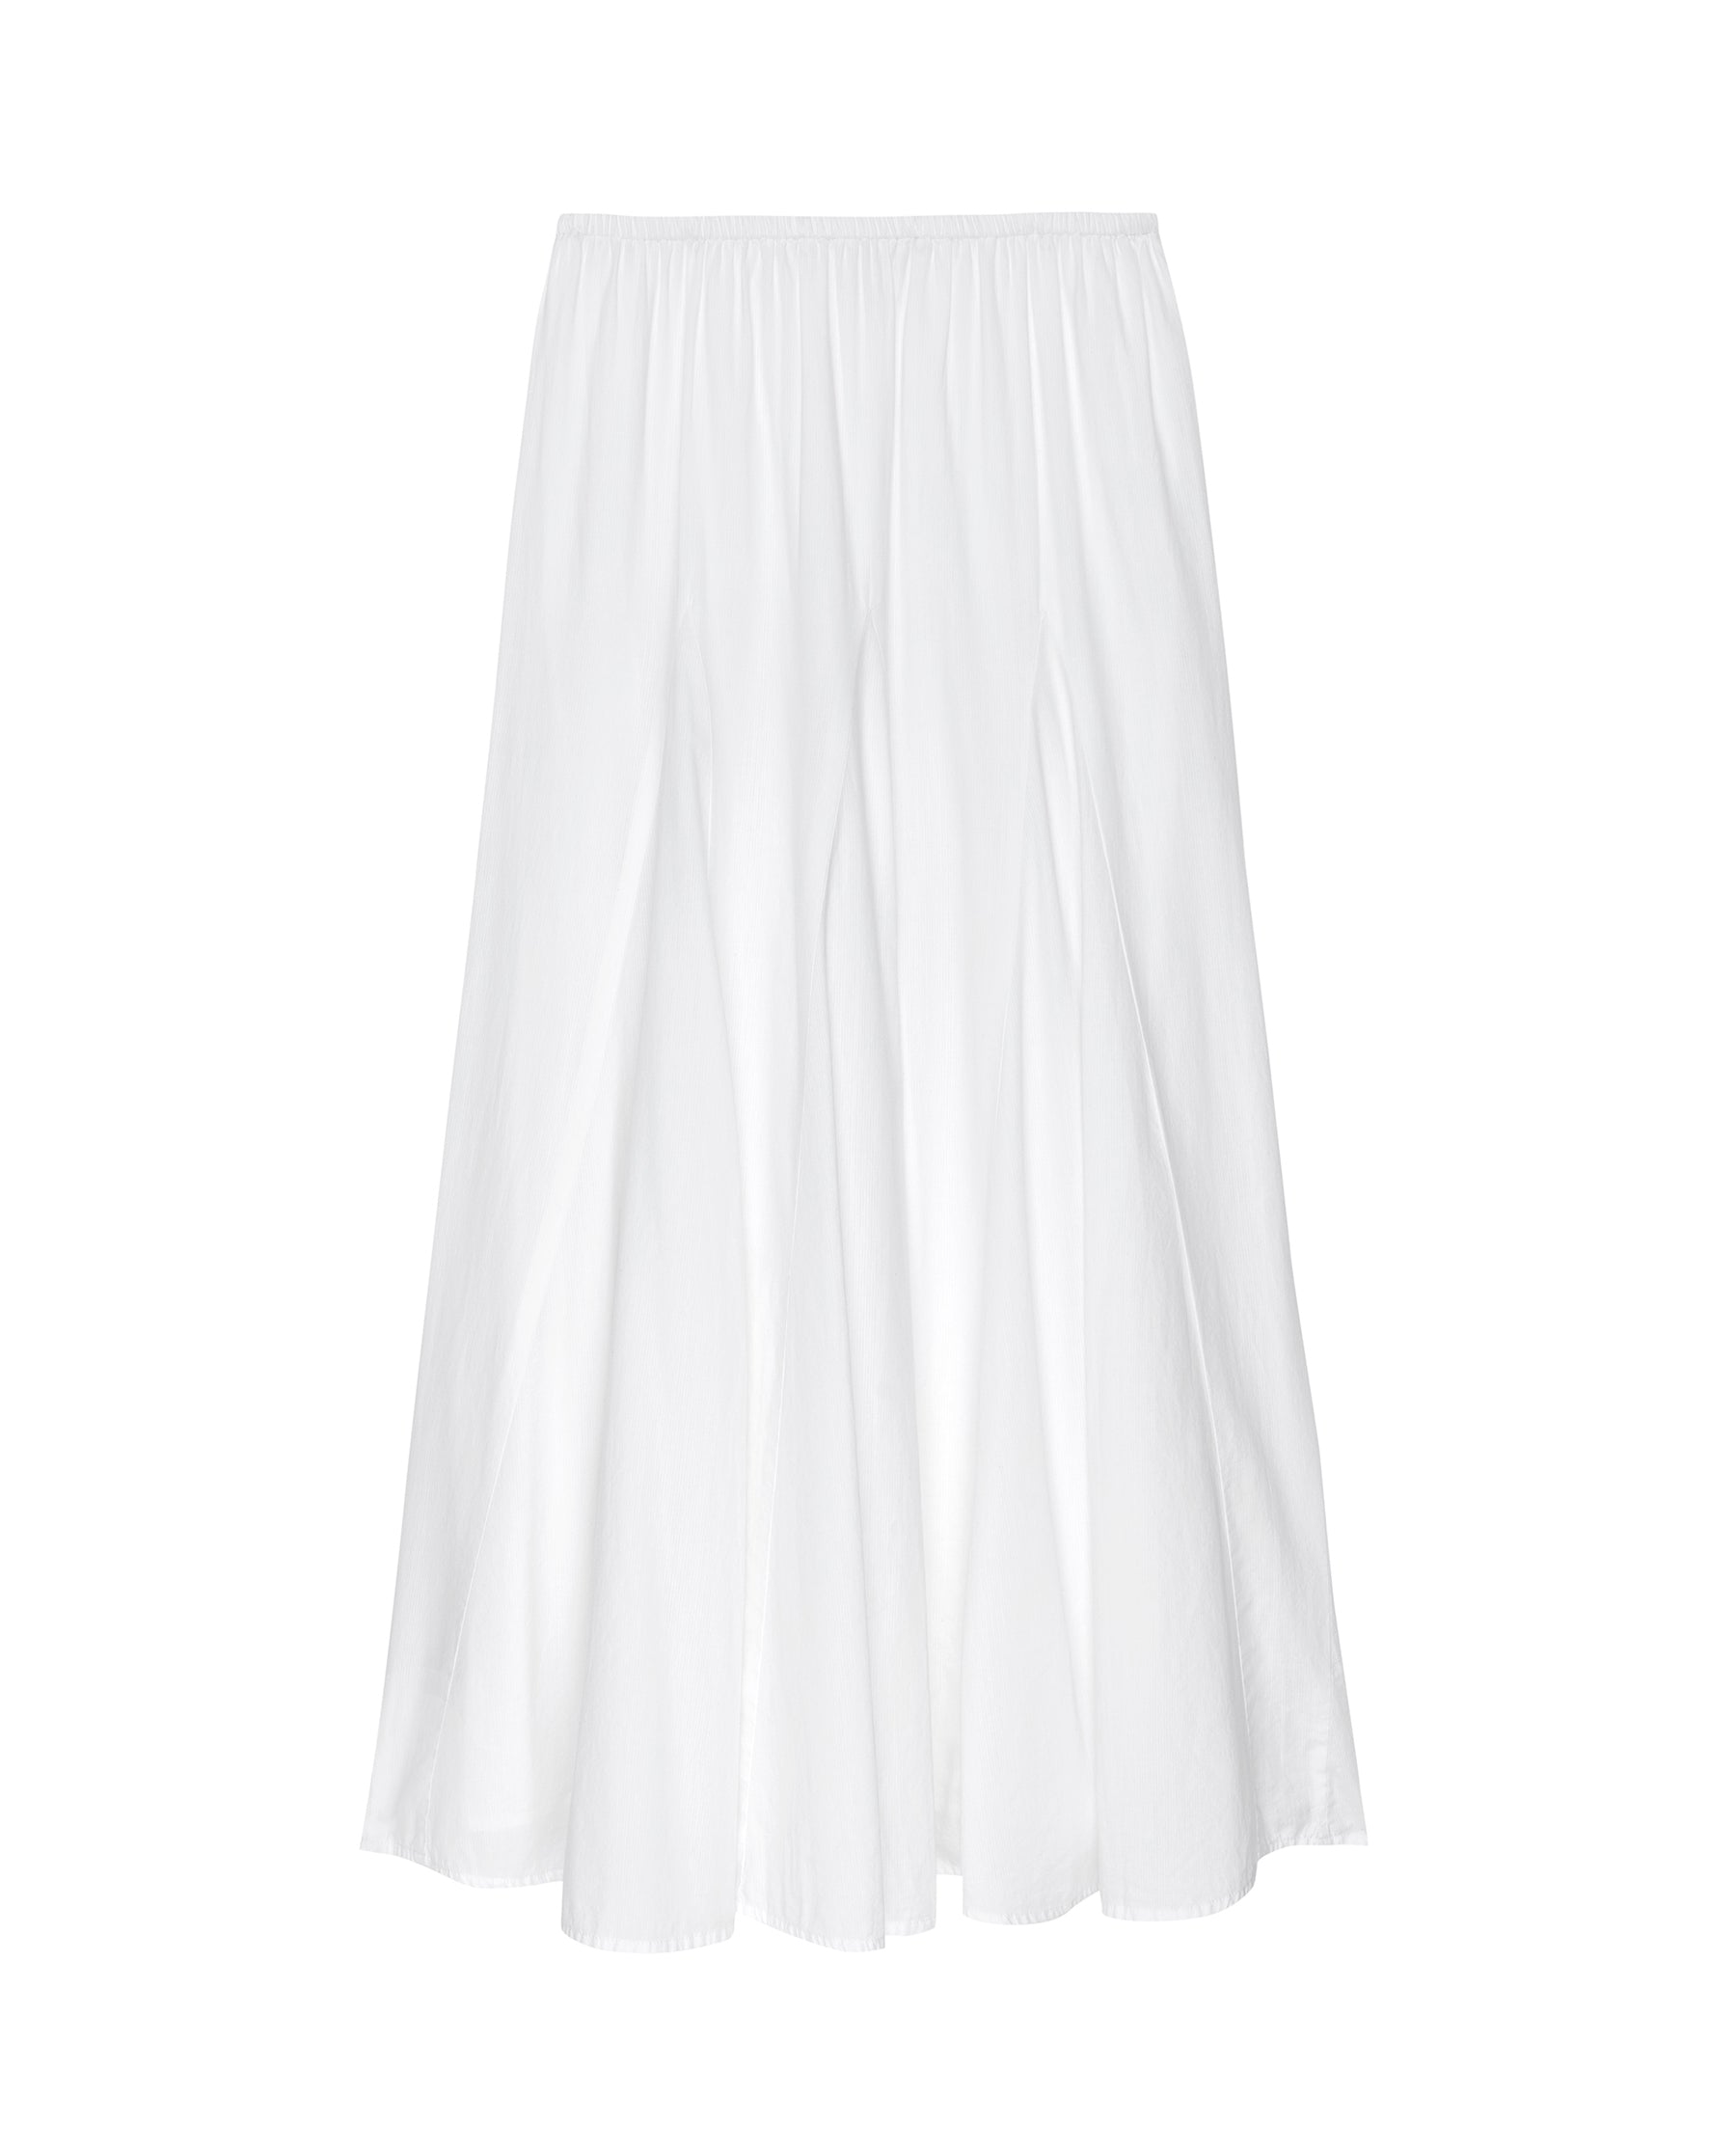 The Godet Skirt. -- White